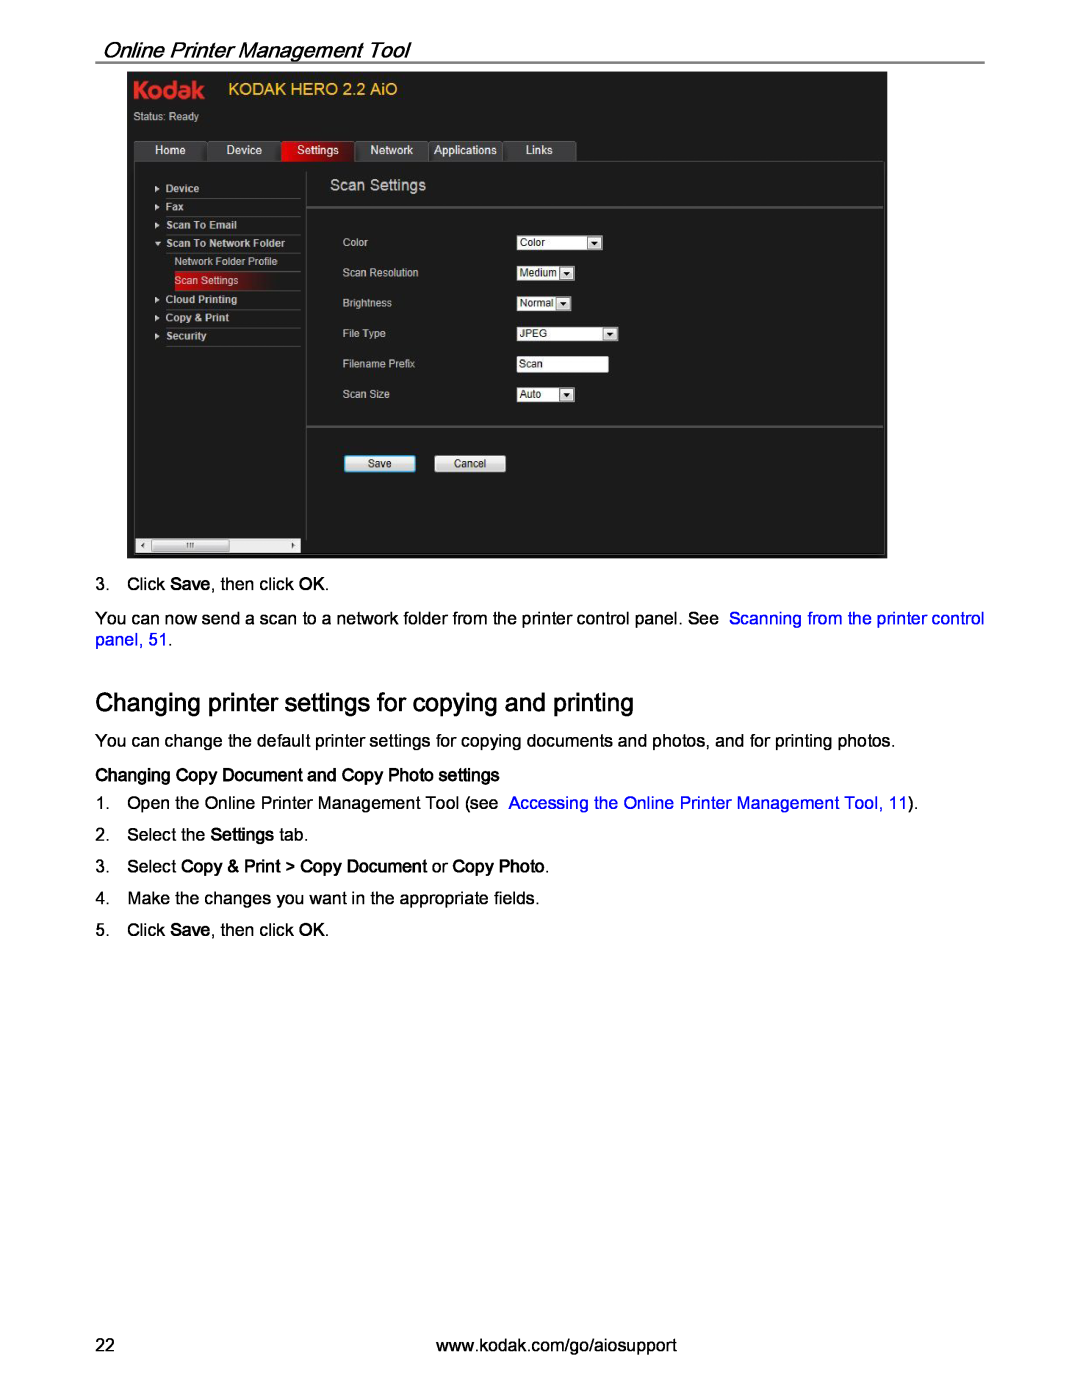 Kodak 2.2 manual Changing printer settings for copying and printing, Changing Copy Document and Copy Photo settings 